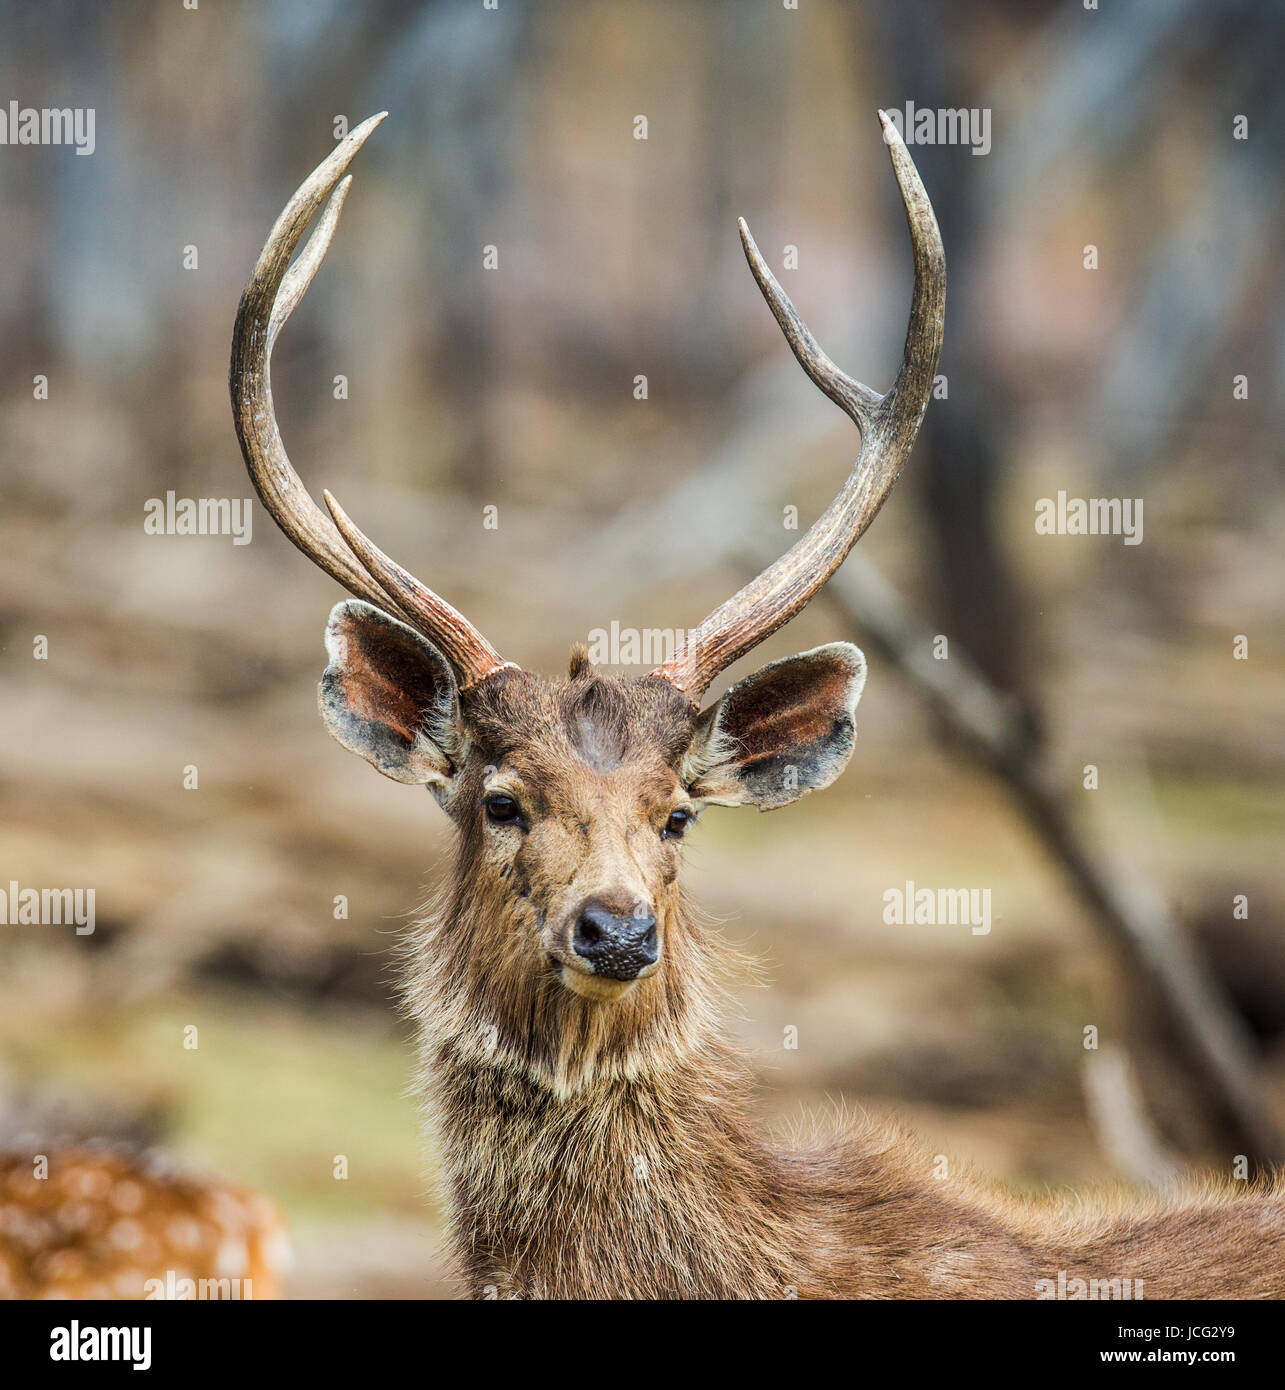 Porträt eines wunderschönen Hirsches mit Geweih in freier Wildbahn. Indien. Nationalpark. Stockfoto